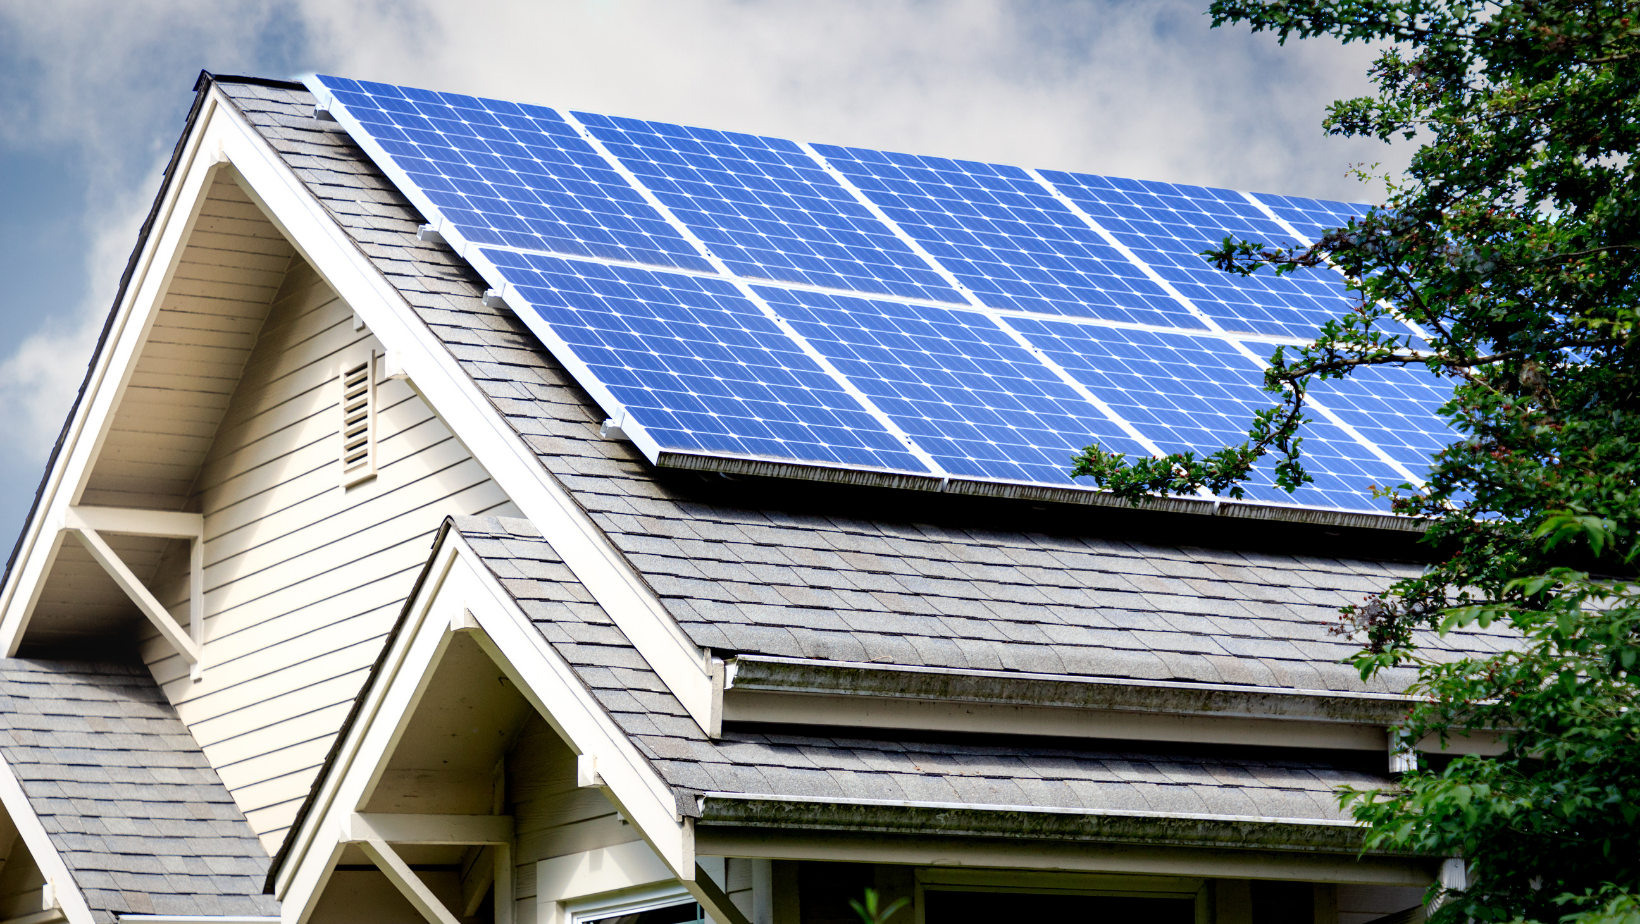 Rooftop solar powers past new milestone » Rooftop solar powers past new milestone